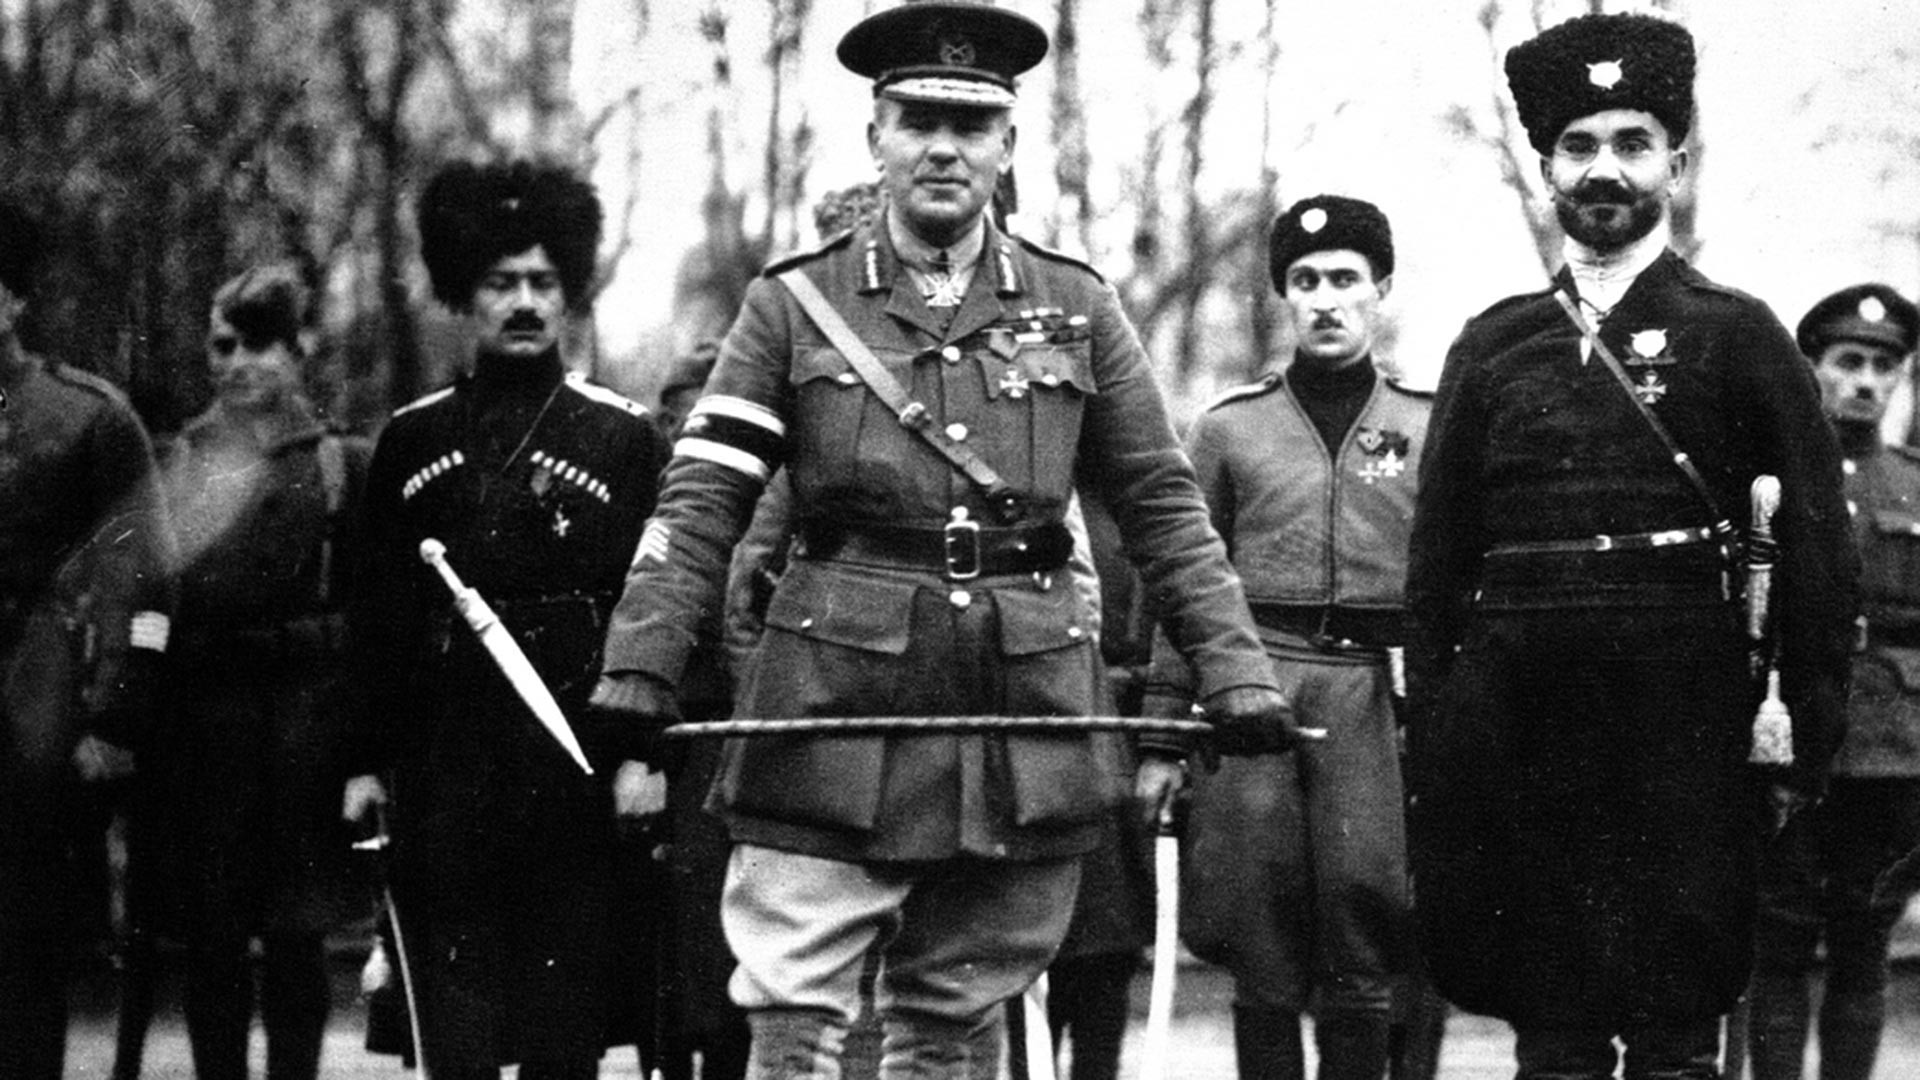 Britanski general Frederick Poole, koji je zapovijedao savezničkim snagama u Arhangelsku do listopada 1918. godine, zajedno s kozacima. Kasnije je stacioniran s 